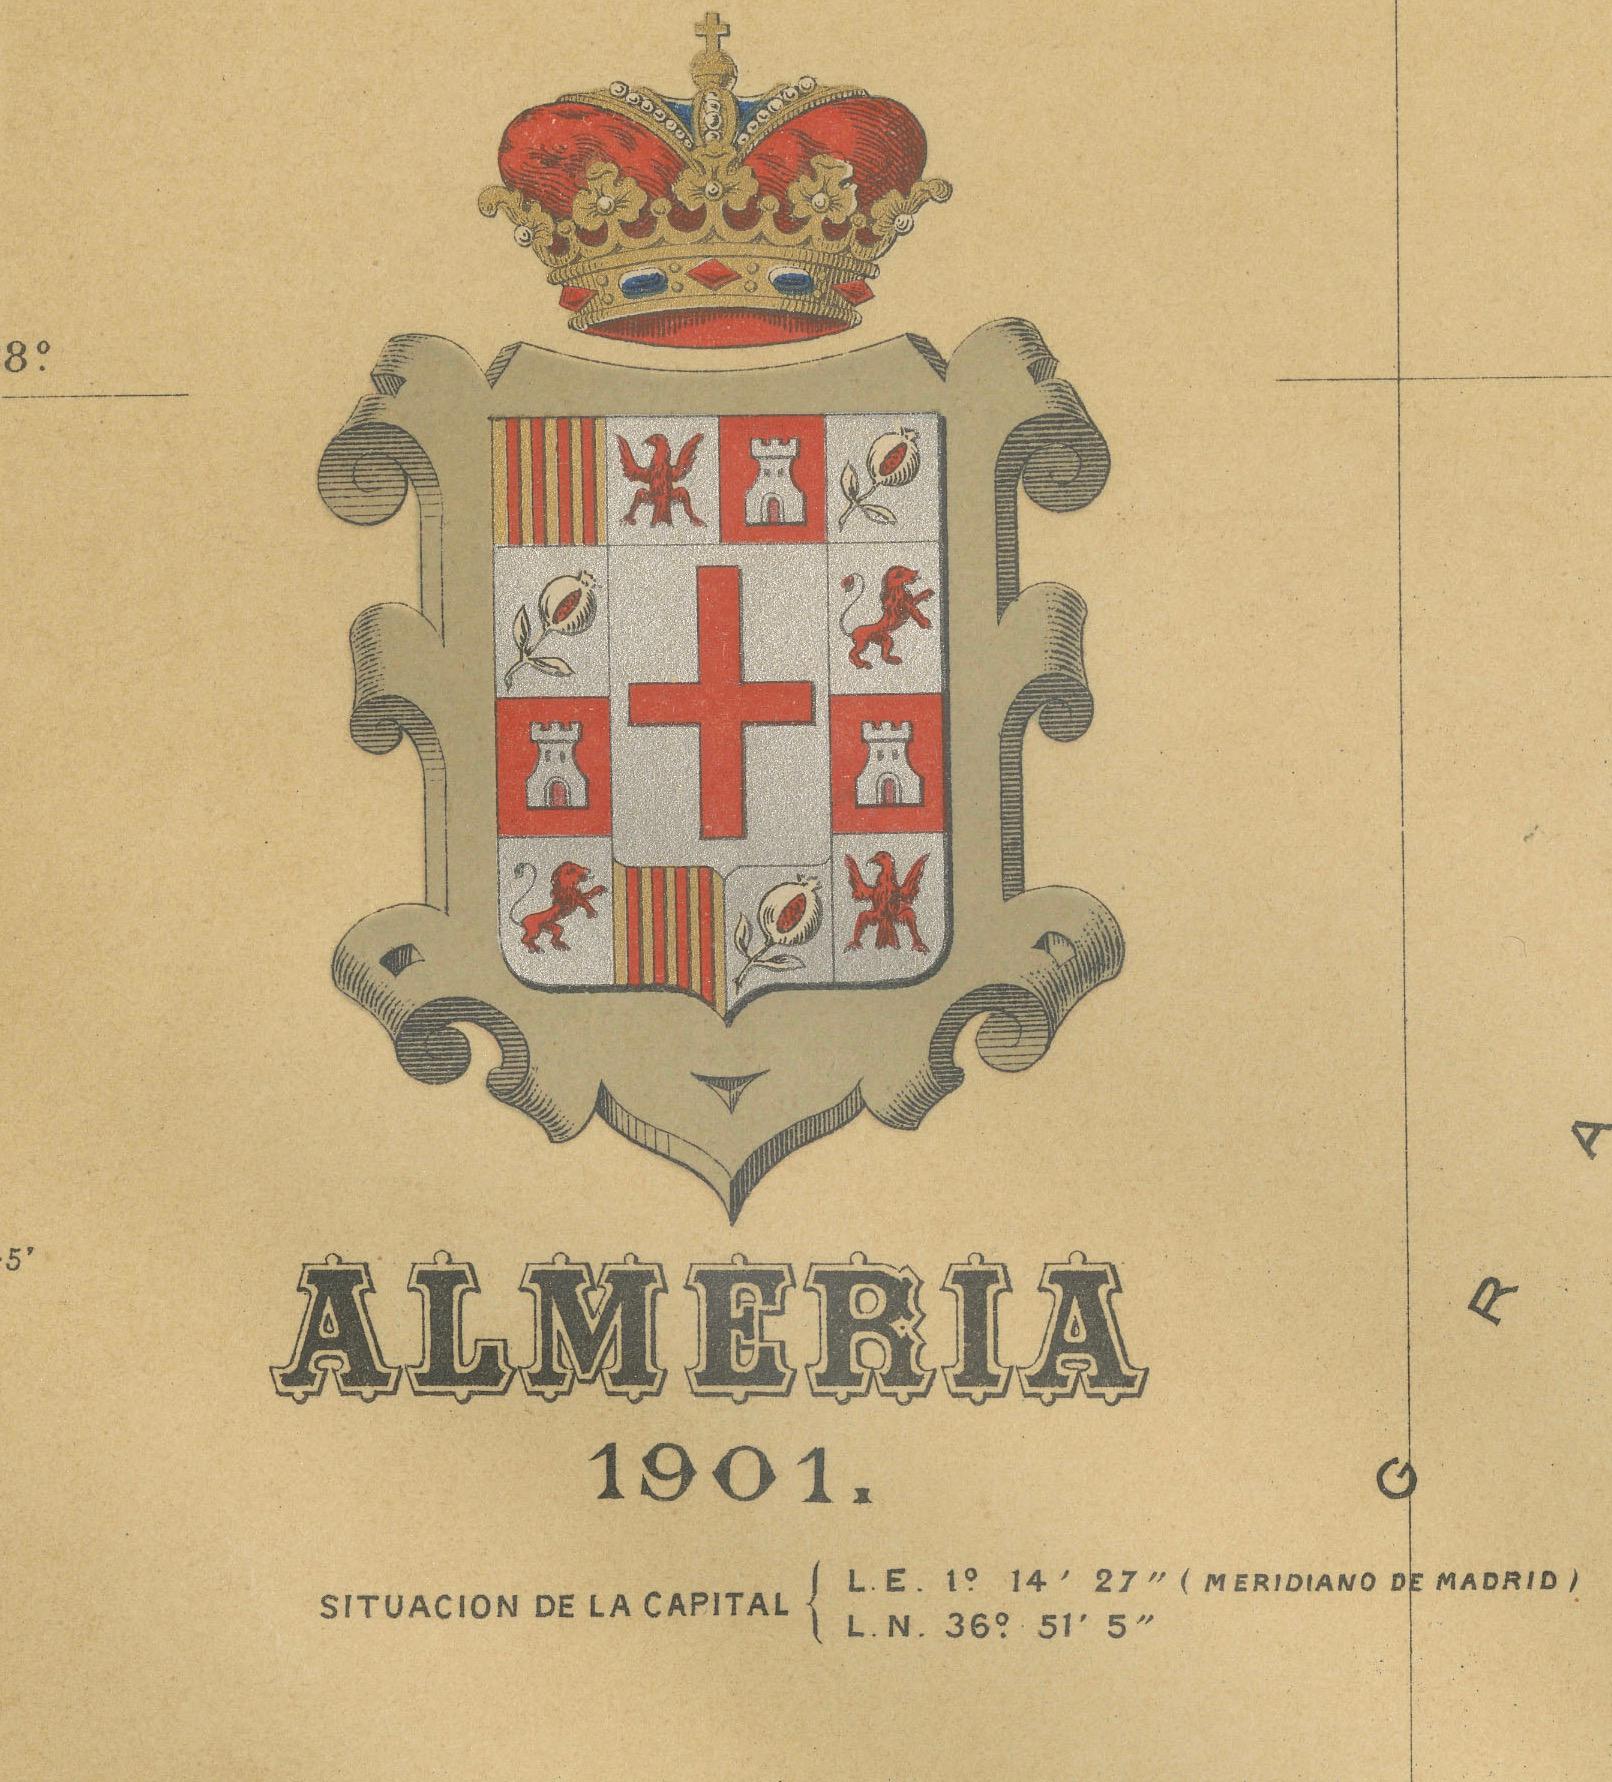 Eine originale antike Karte der Provinz Almería, Spanien, aus dem Jahr 1901. 

Das Mittelmeer, bezeichnet als 